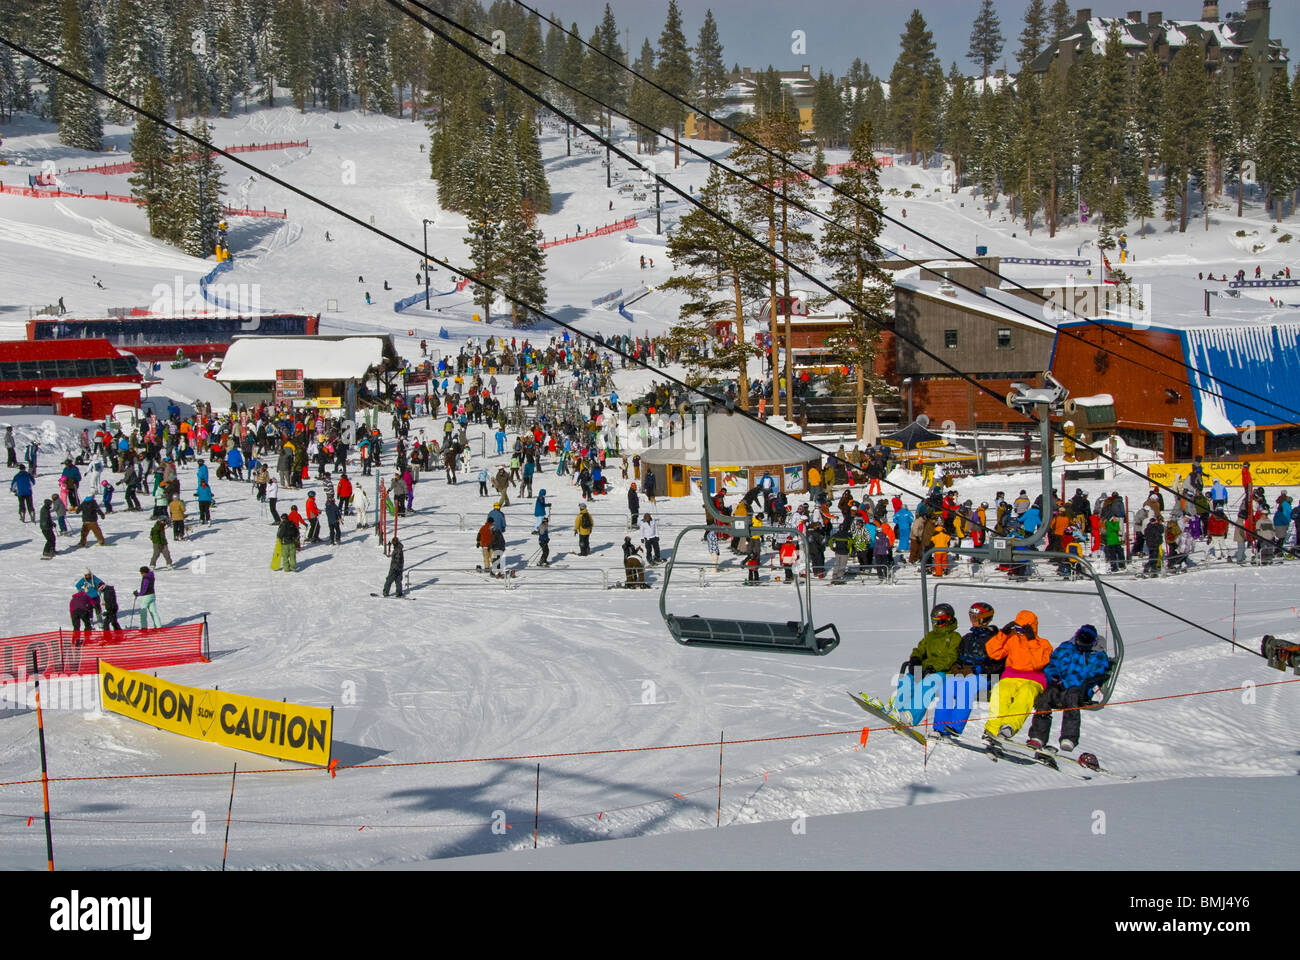 Sessellift Massen Aufregung bunte Ski Sport Winter Szene athletischen Sportler Polen North Lake Tahoe Ski Kalifornien USA Stockfoto